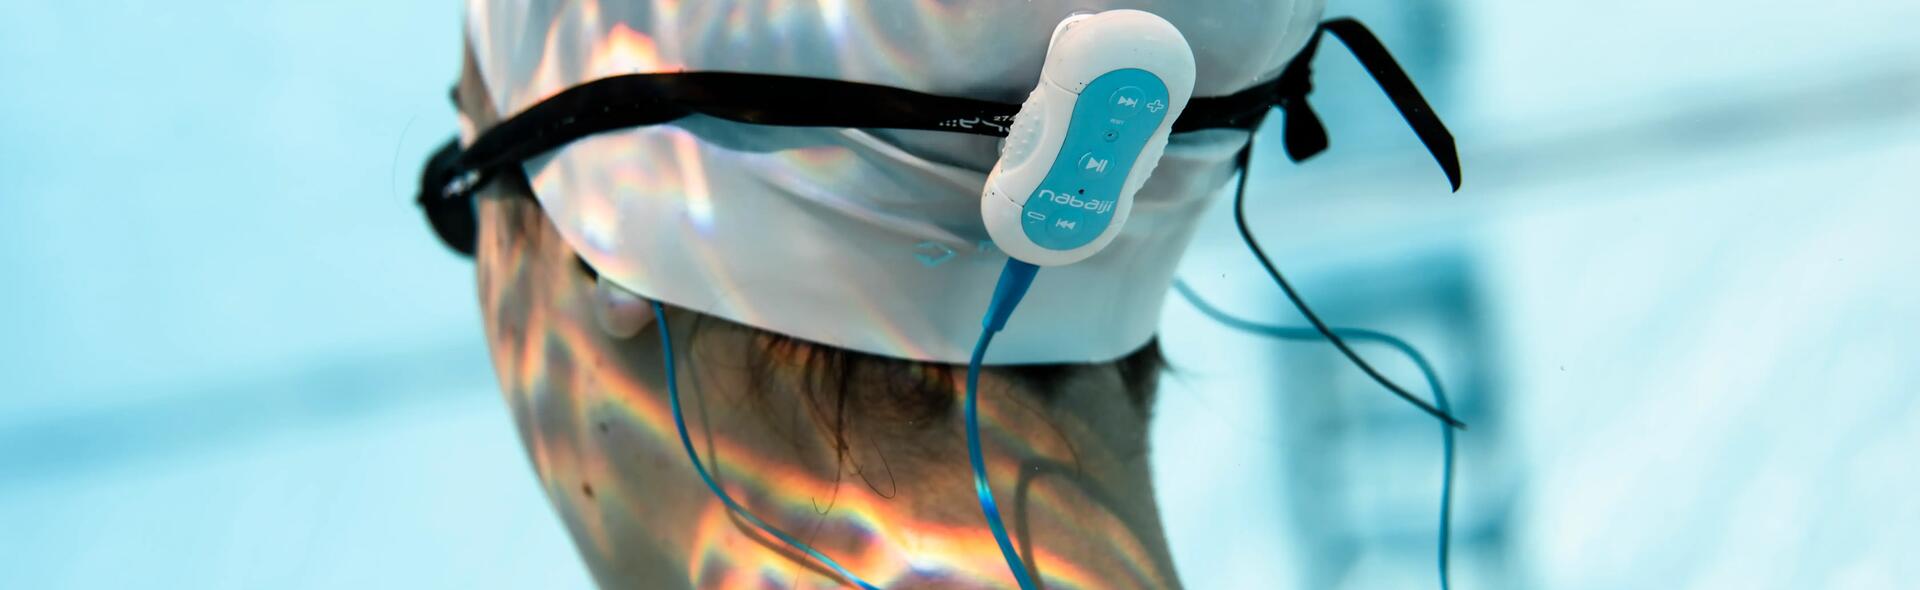 Decathlon presenta el Nabaiji MP3 Delight para escuchar música bajo el agua